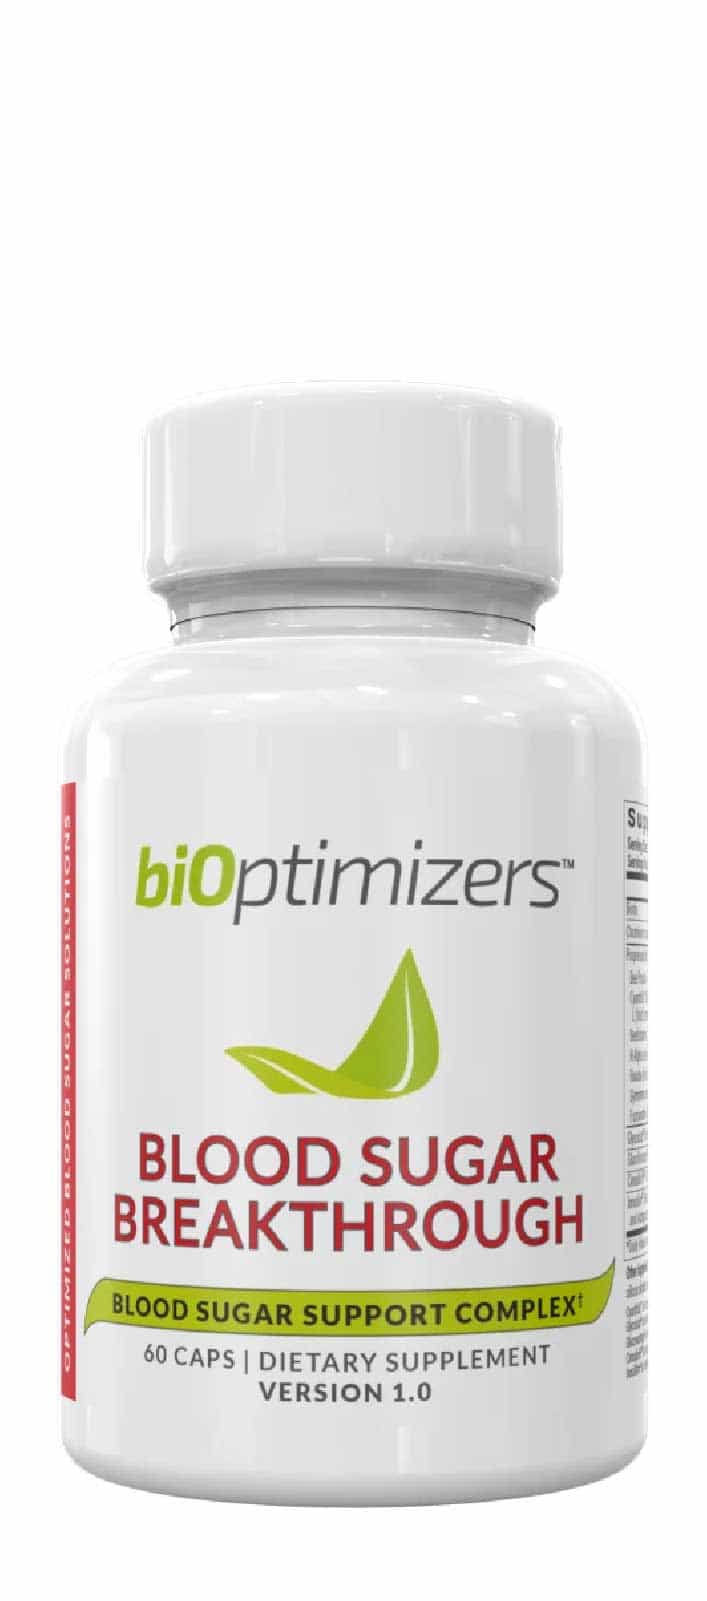 BiOptimizers Blood Sugar Breakthrough